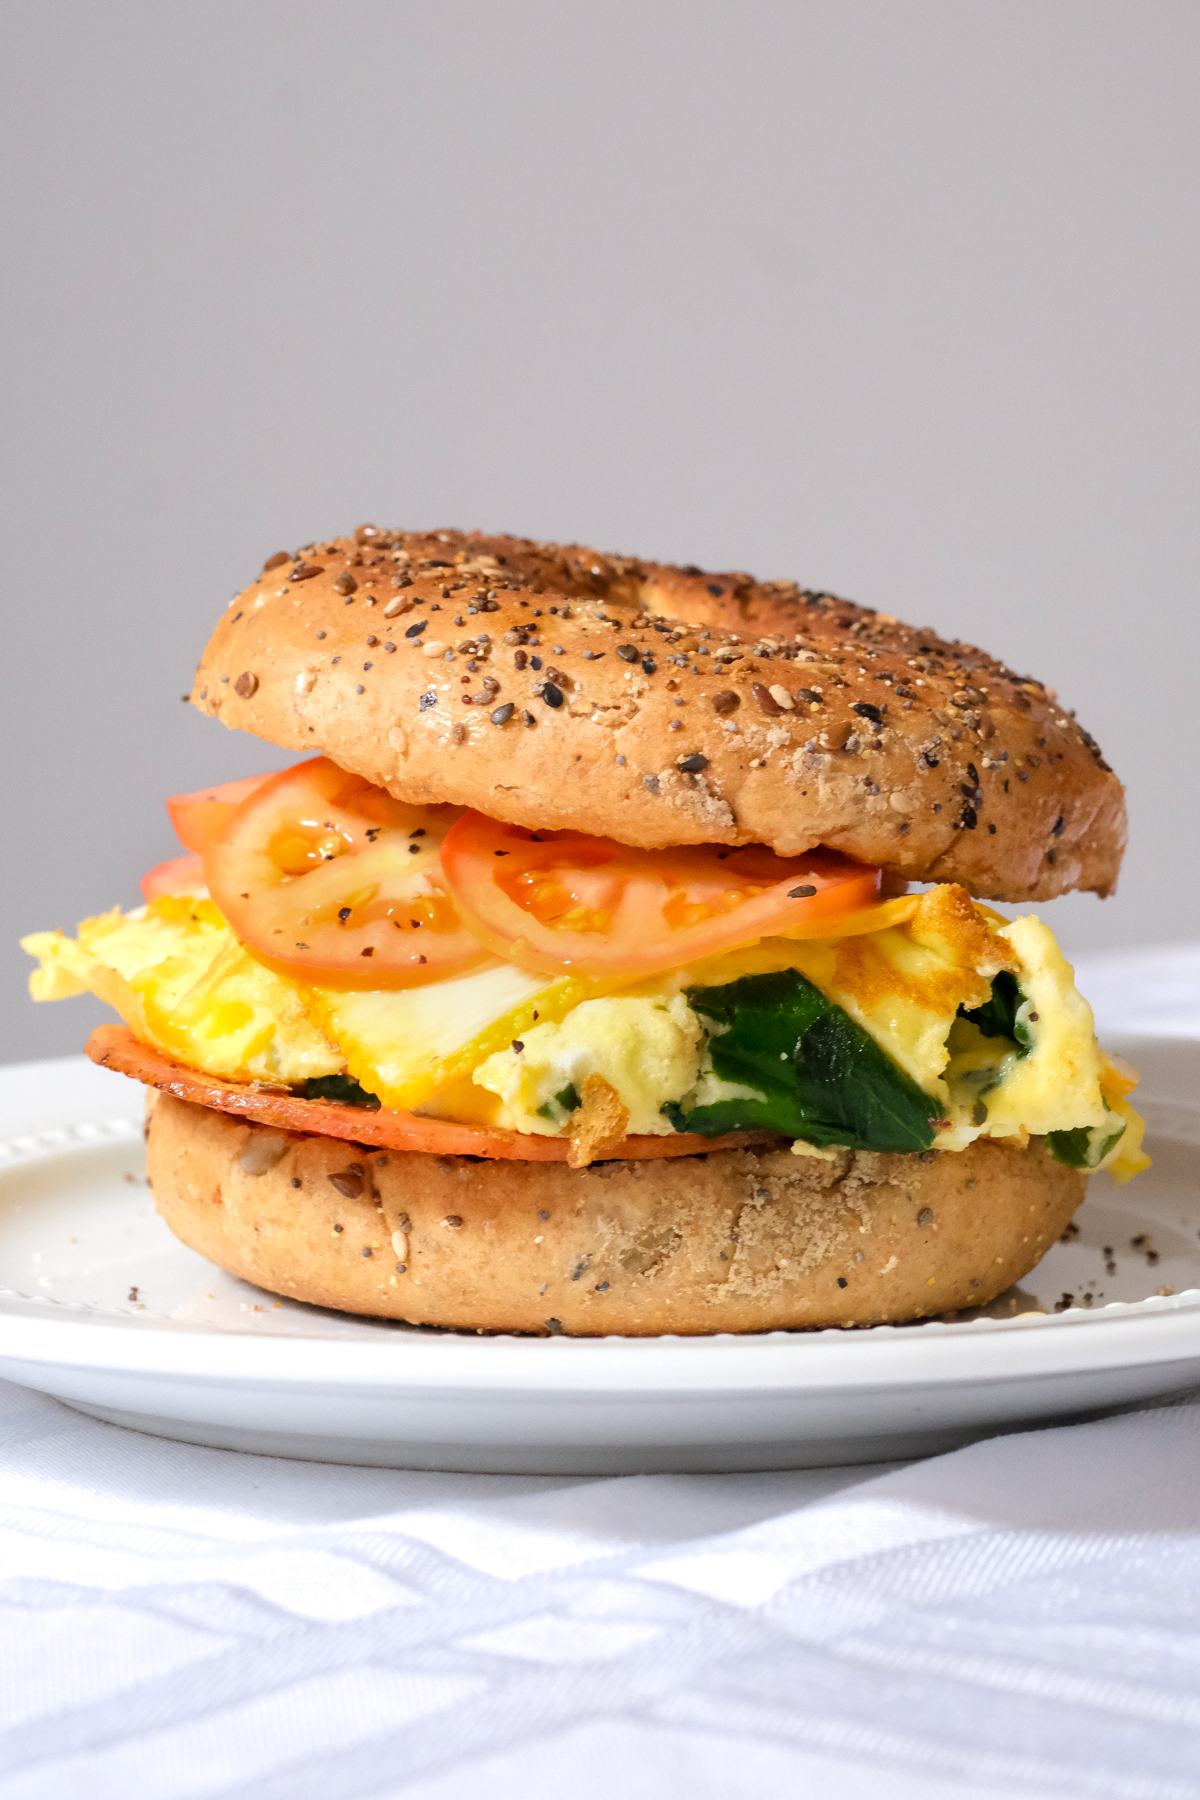 https://www.kierstenhickman.com/wp-content/uploads/2020/09/spinach-omelette-breakfast-sandwich-1-kiersten-hickman.jpg